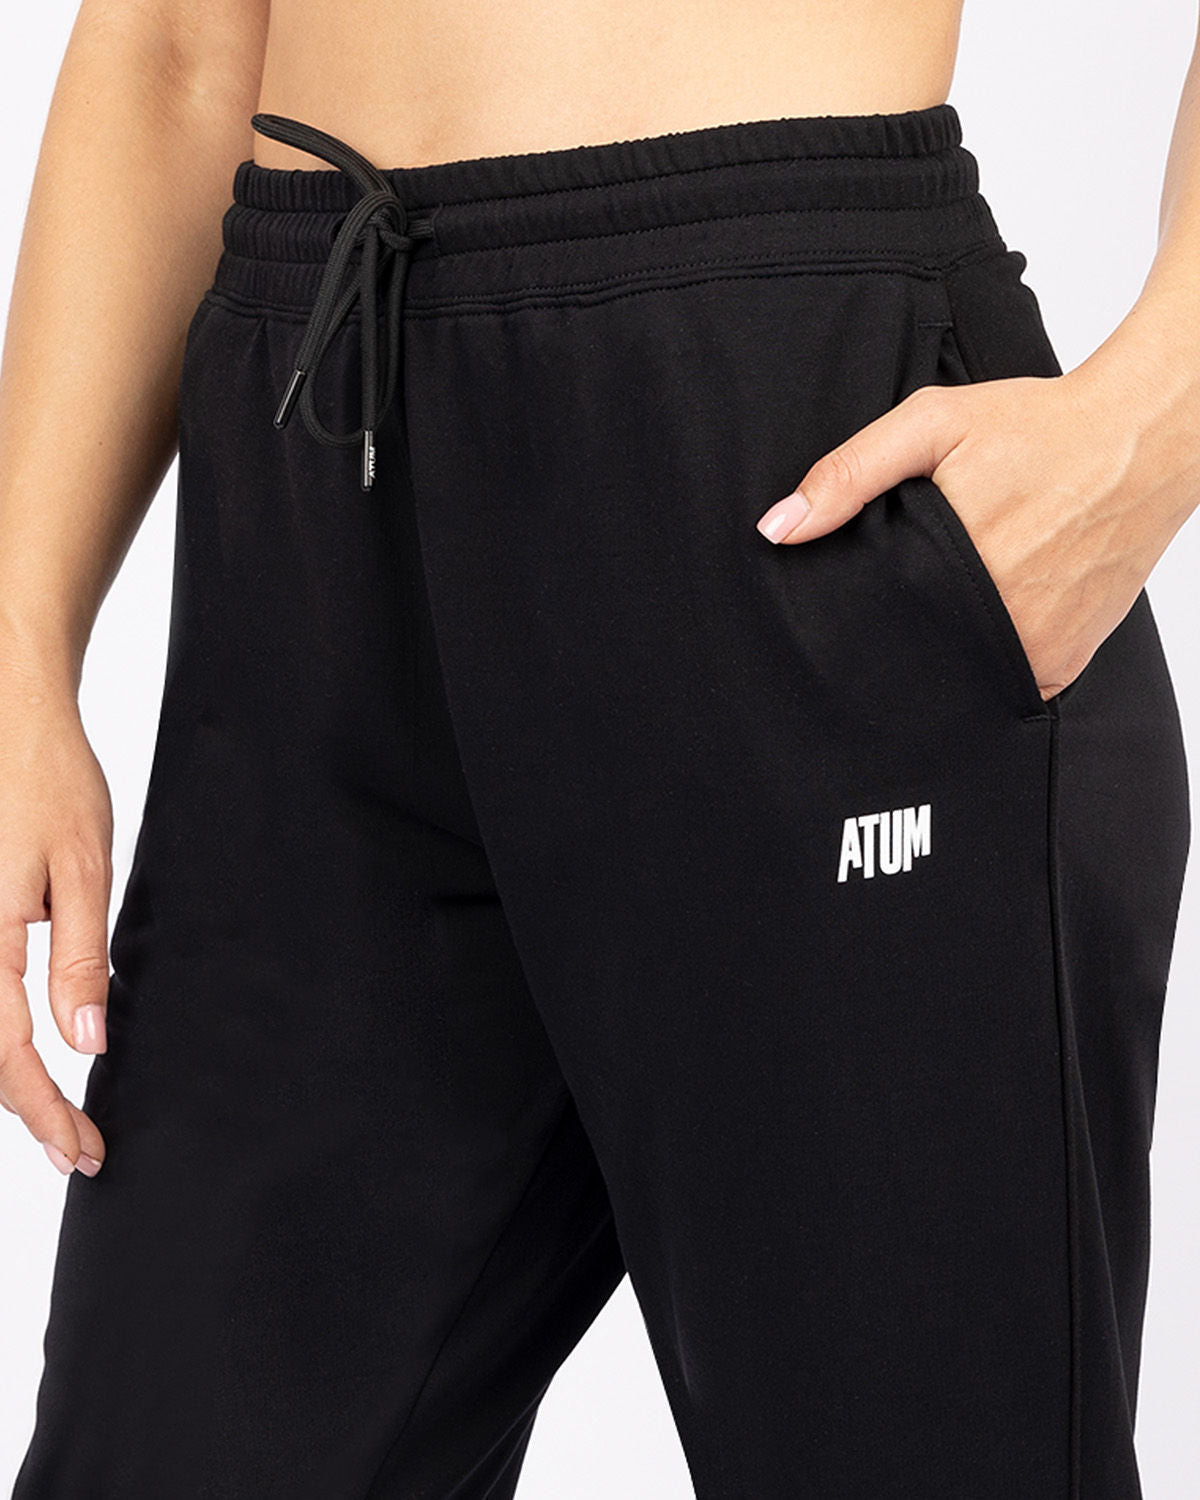 Women's Sport Sweatpants with Side Pockets